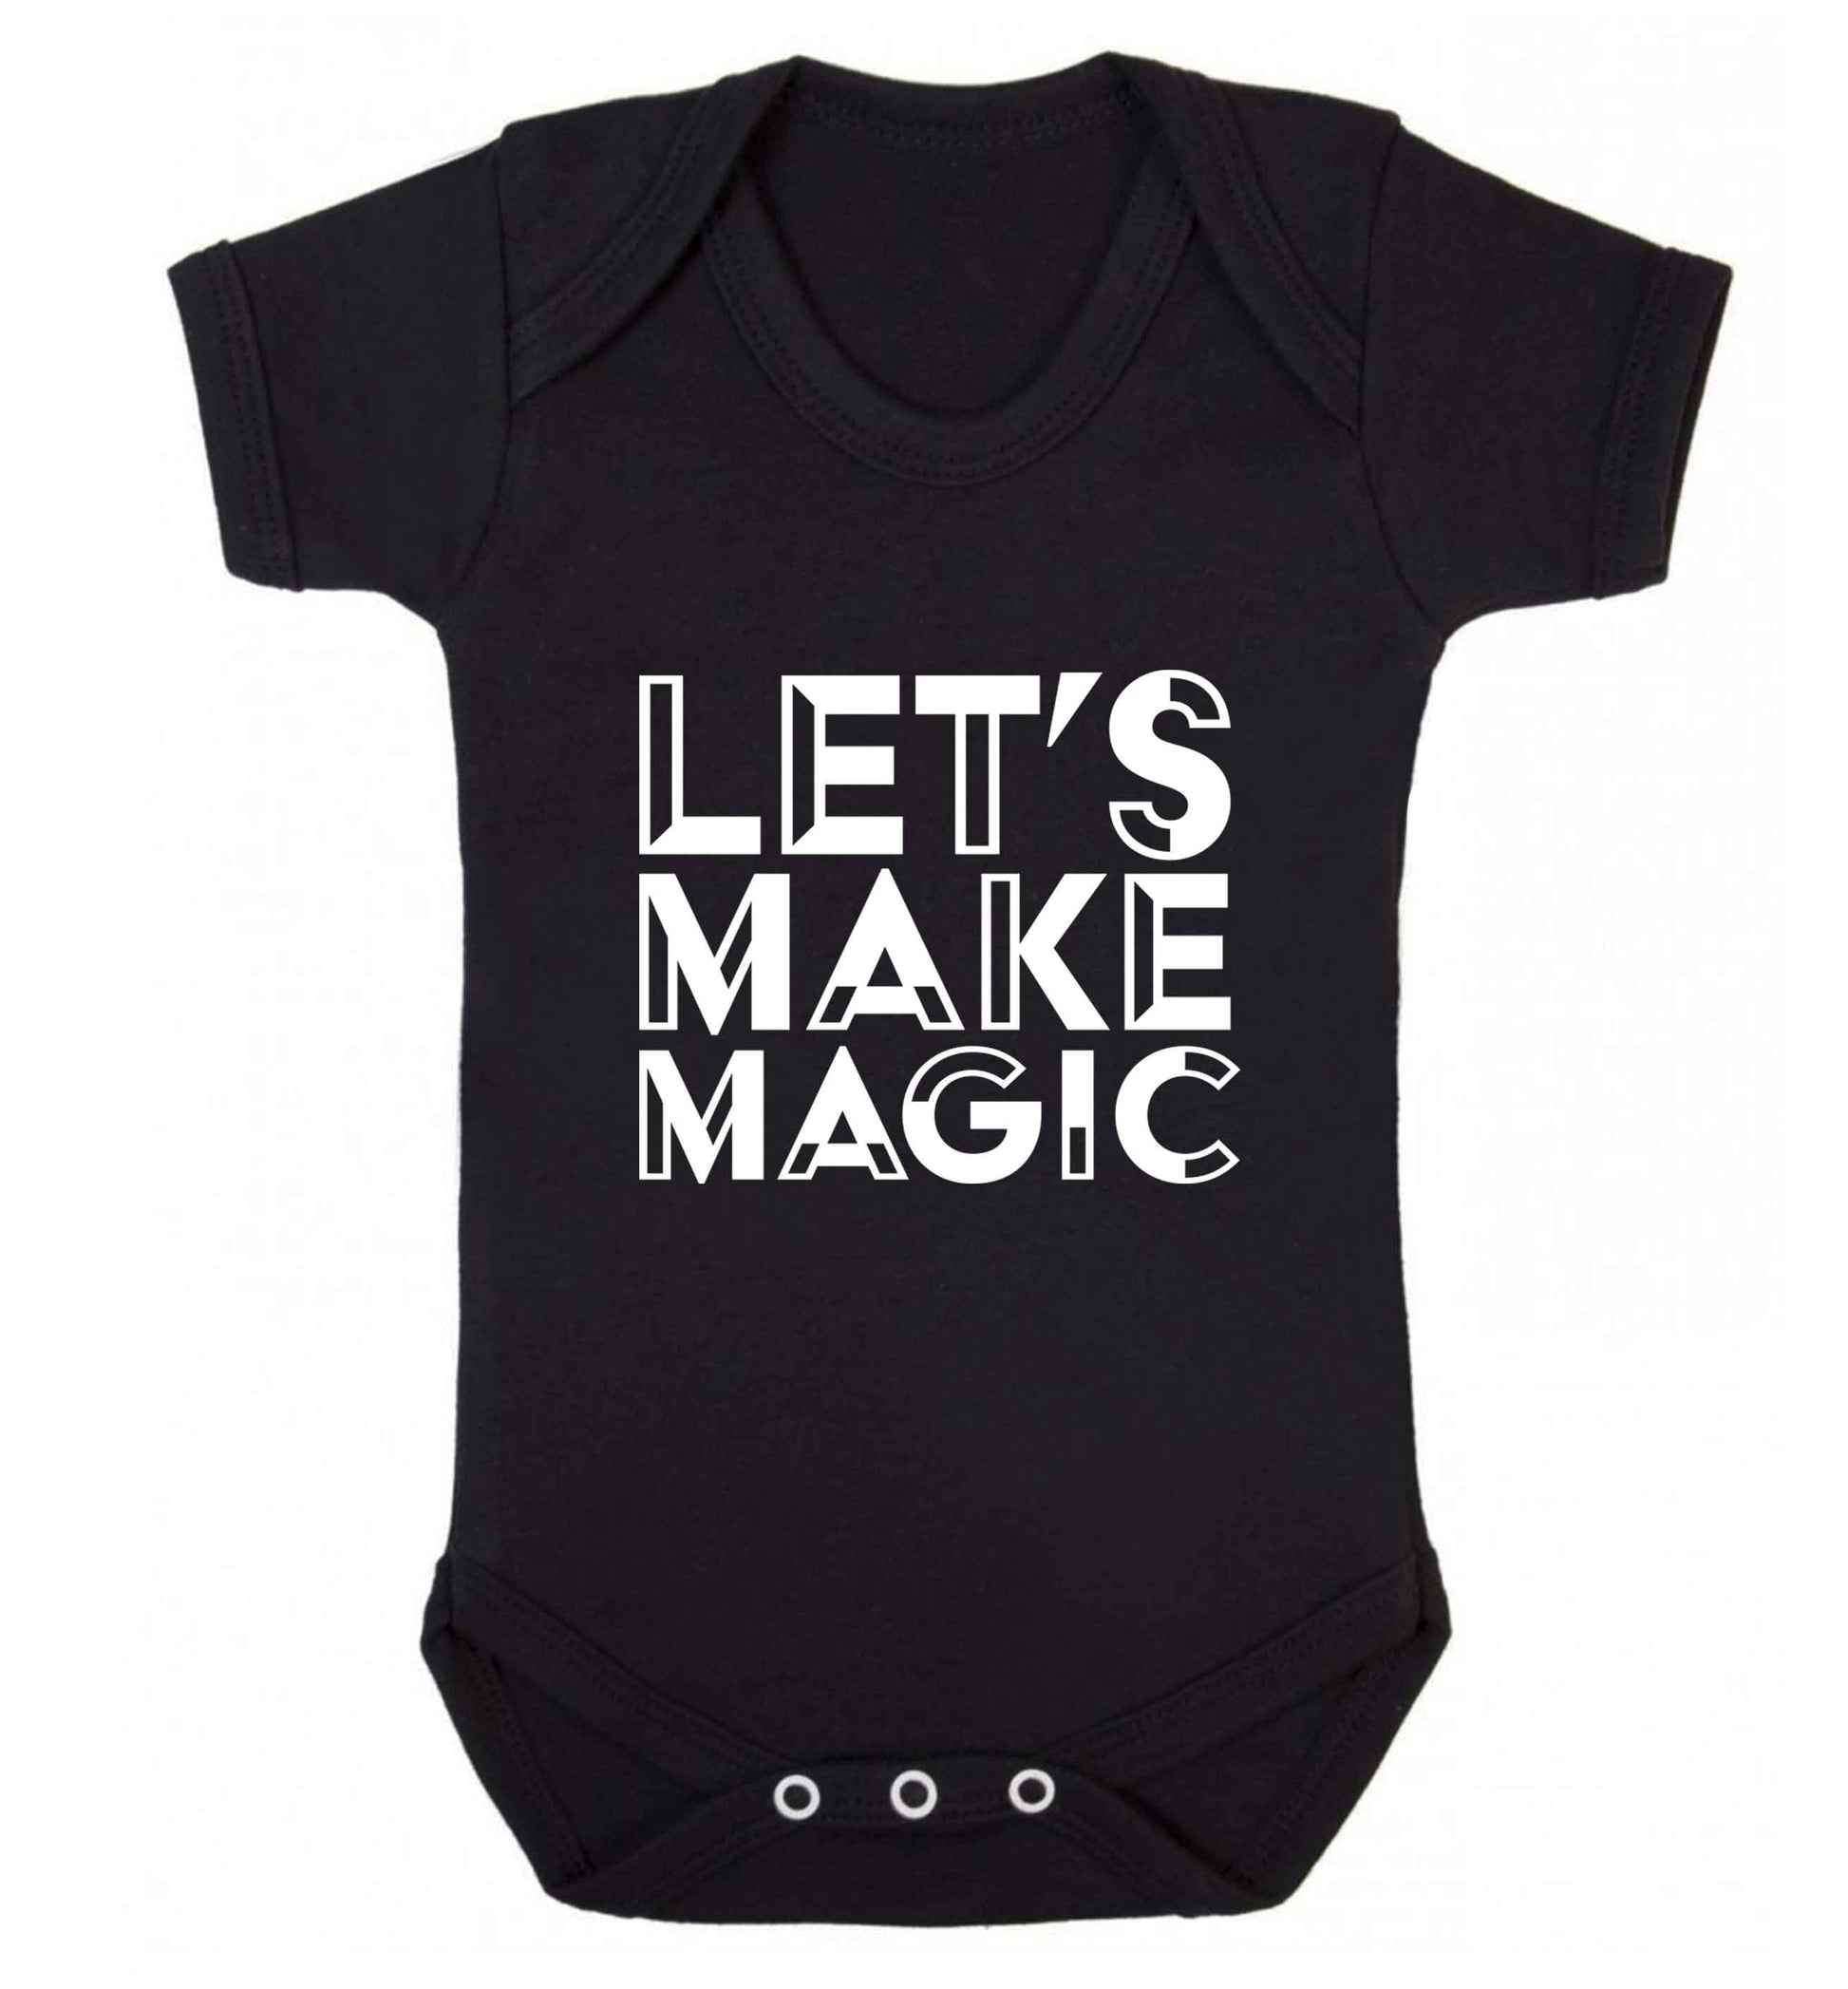 Let's make magic baby vest black 18-24 months